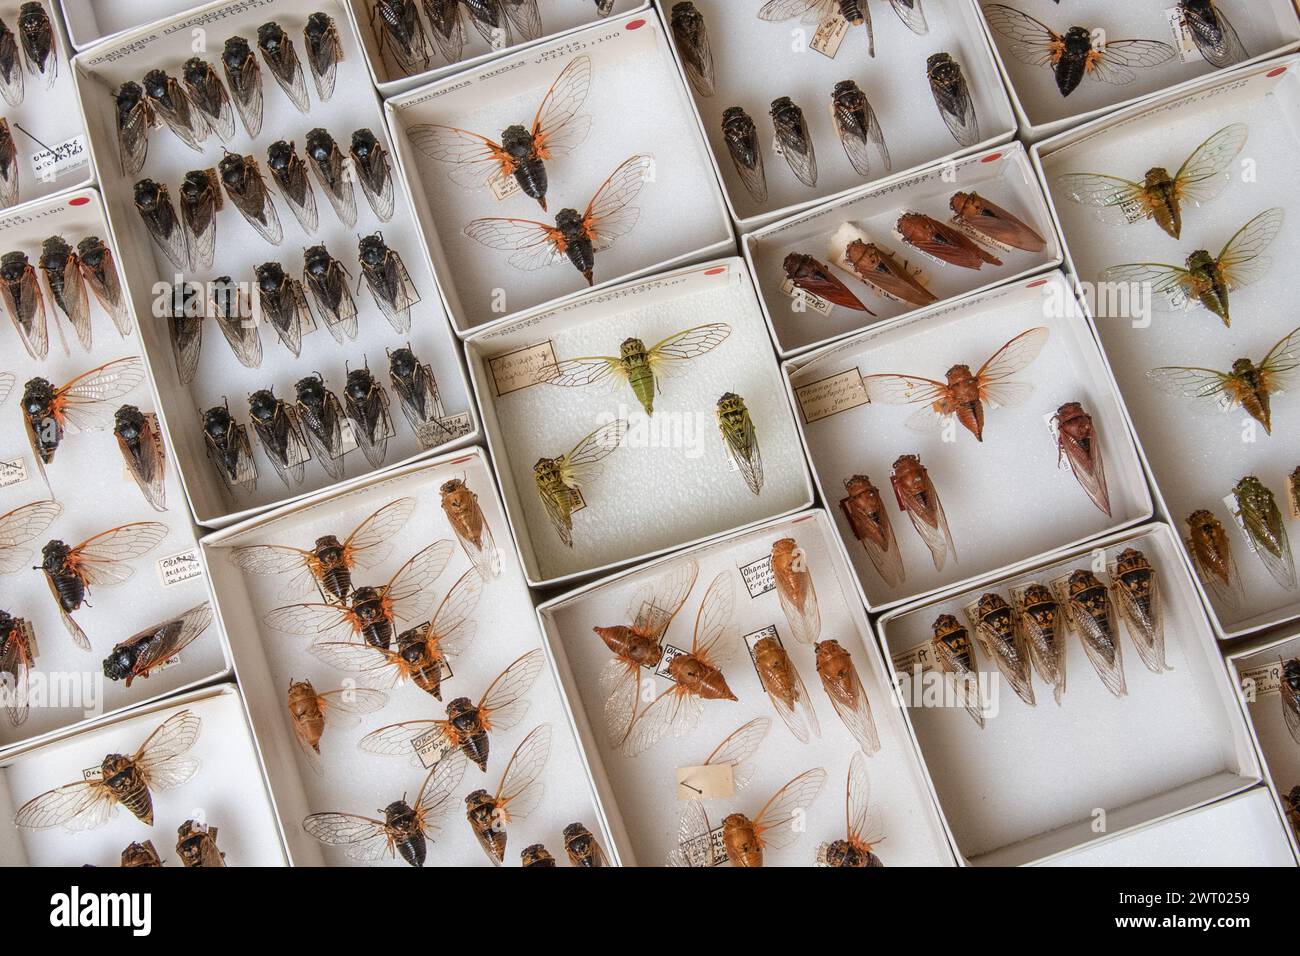 Viele gefiederte Zikaden in einem Museumskoffer zeigen die Vielfalt der Zikaden Nordamerikas. Viele Insektenarten sind vertreten. Stockfoto